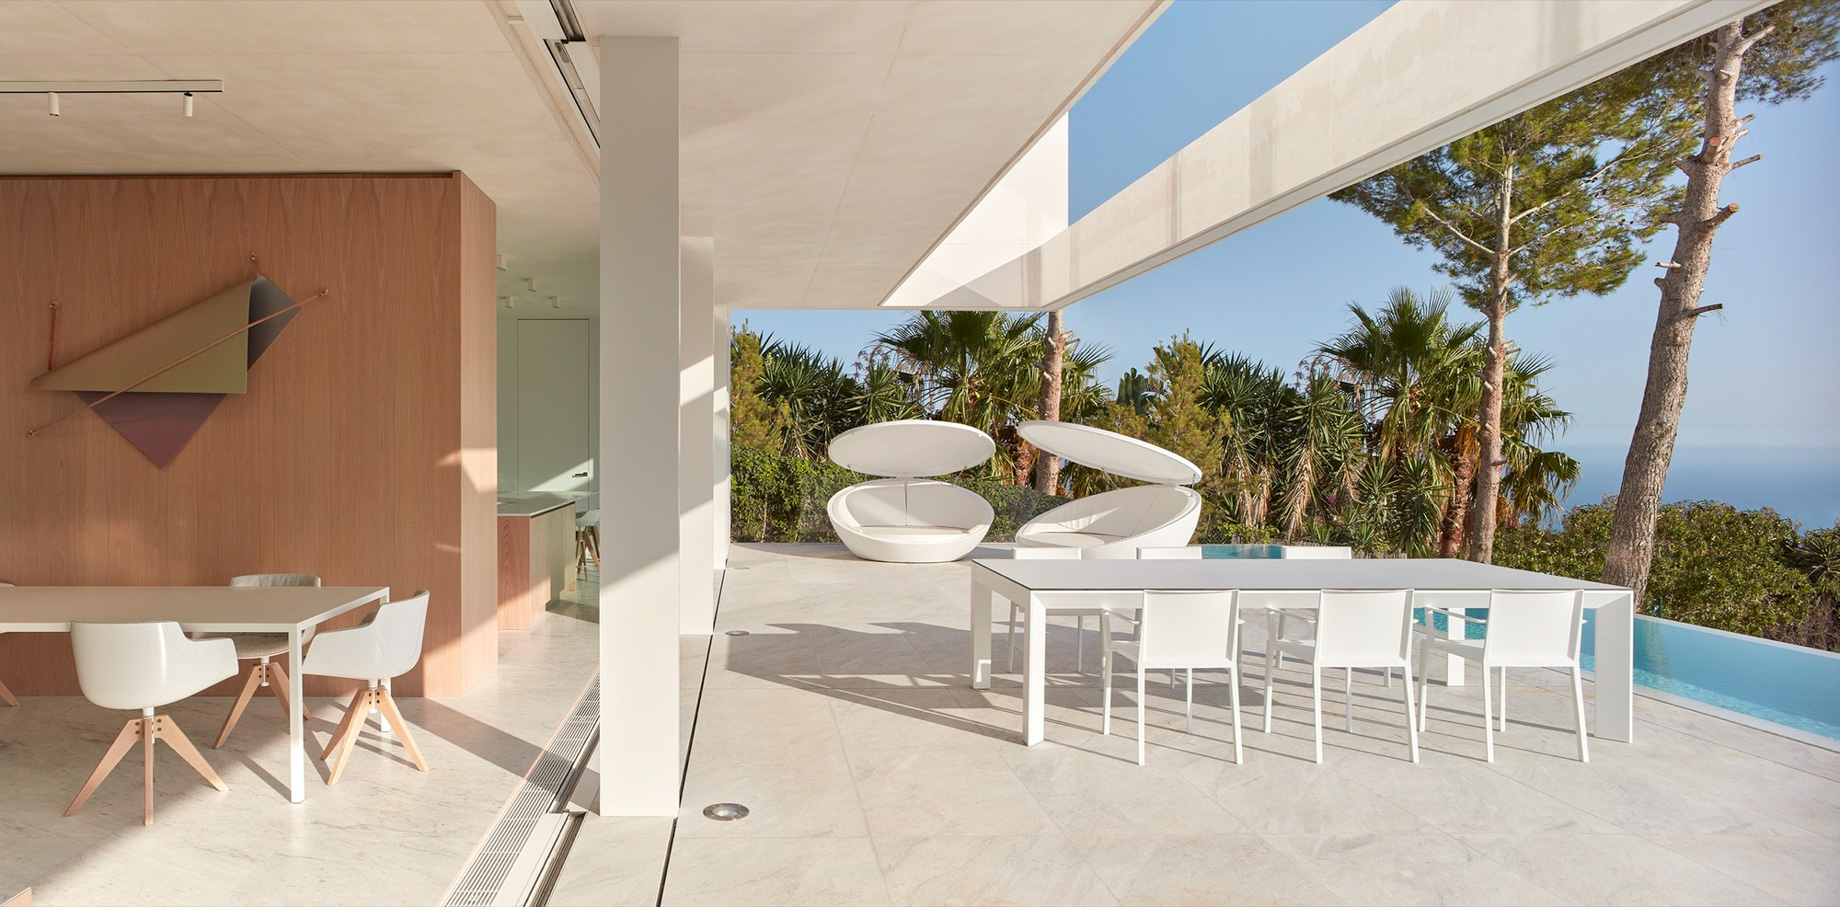 Casa Oslo Modern Contemporary Residence – Alicante, Spain – 9